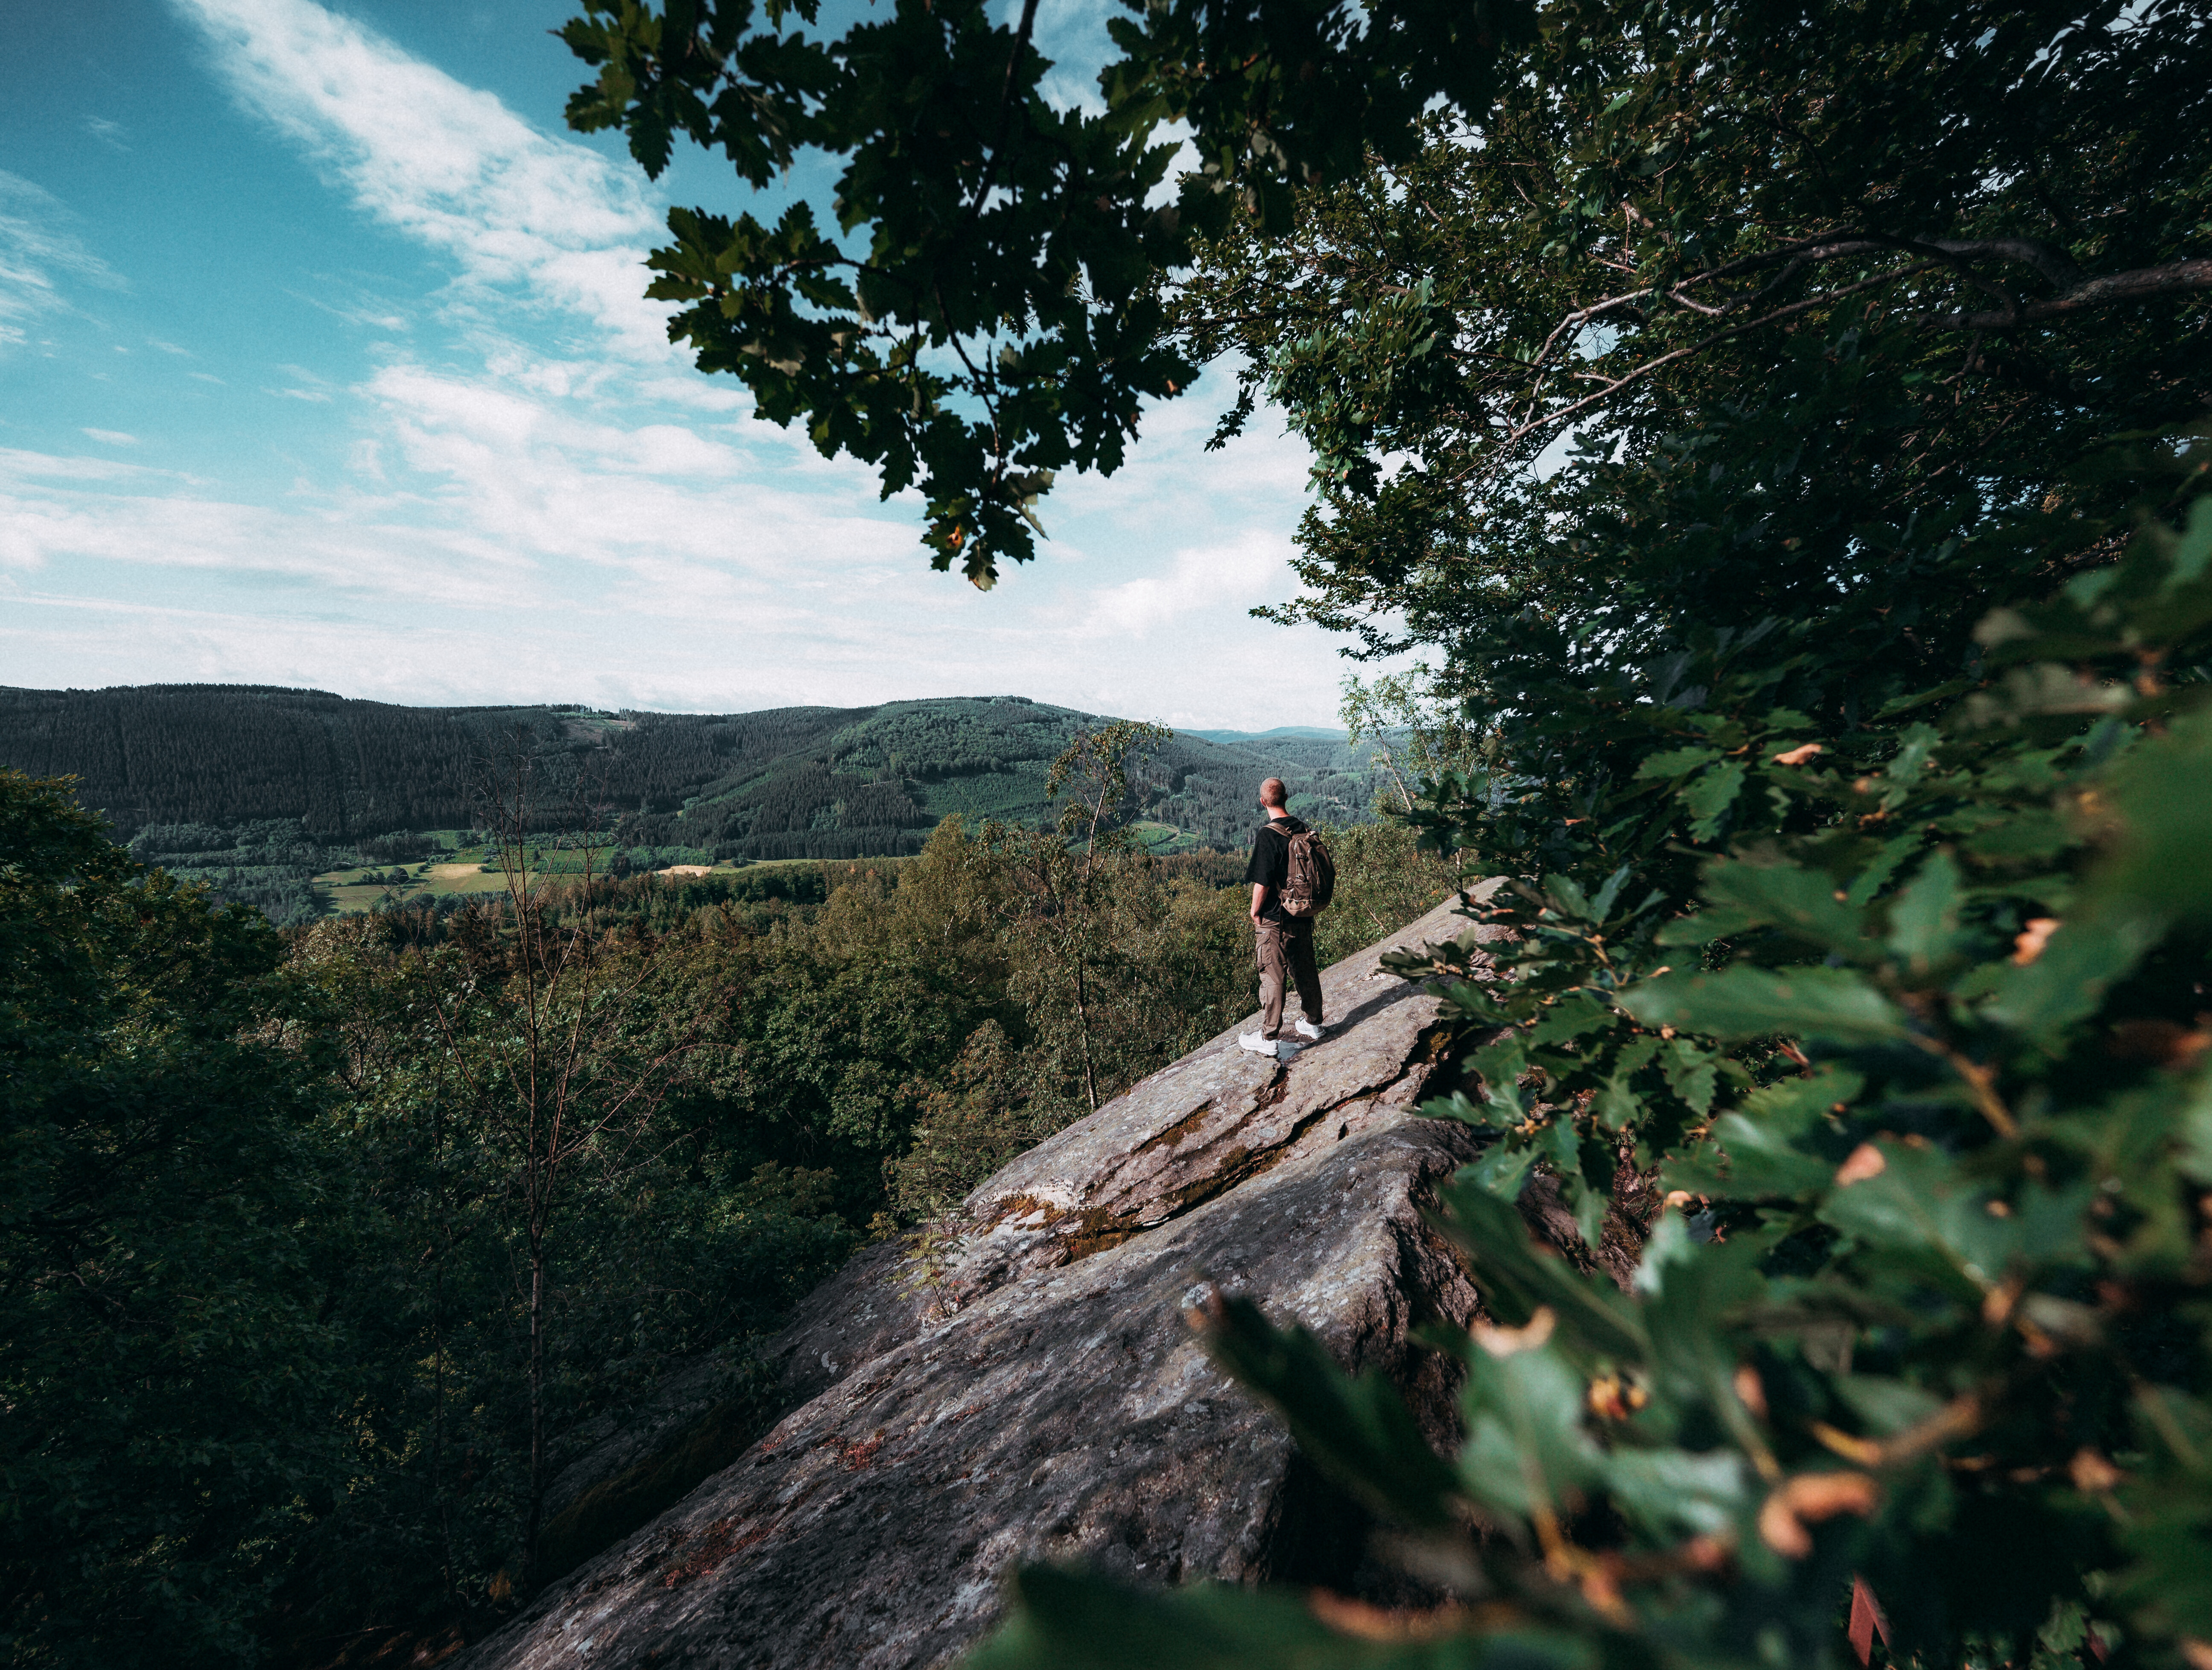 Ein Wanderer steht auf einem Felsvorsprung am Walderlebnispfad Saalhausen und blickt über die bewaldeten Hügel. © Tourismus NRW e.V./Johannes Höhn